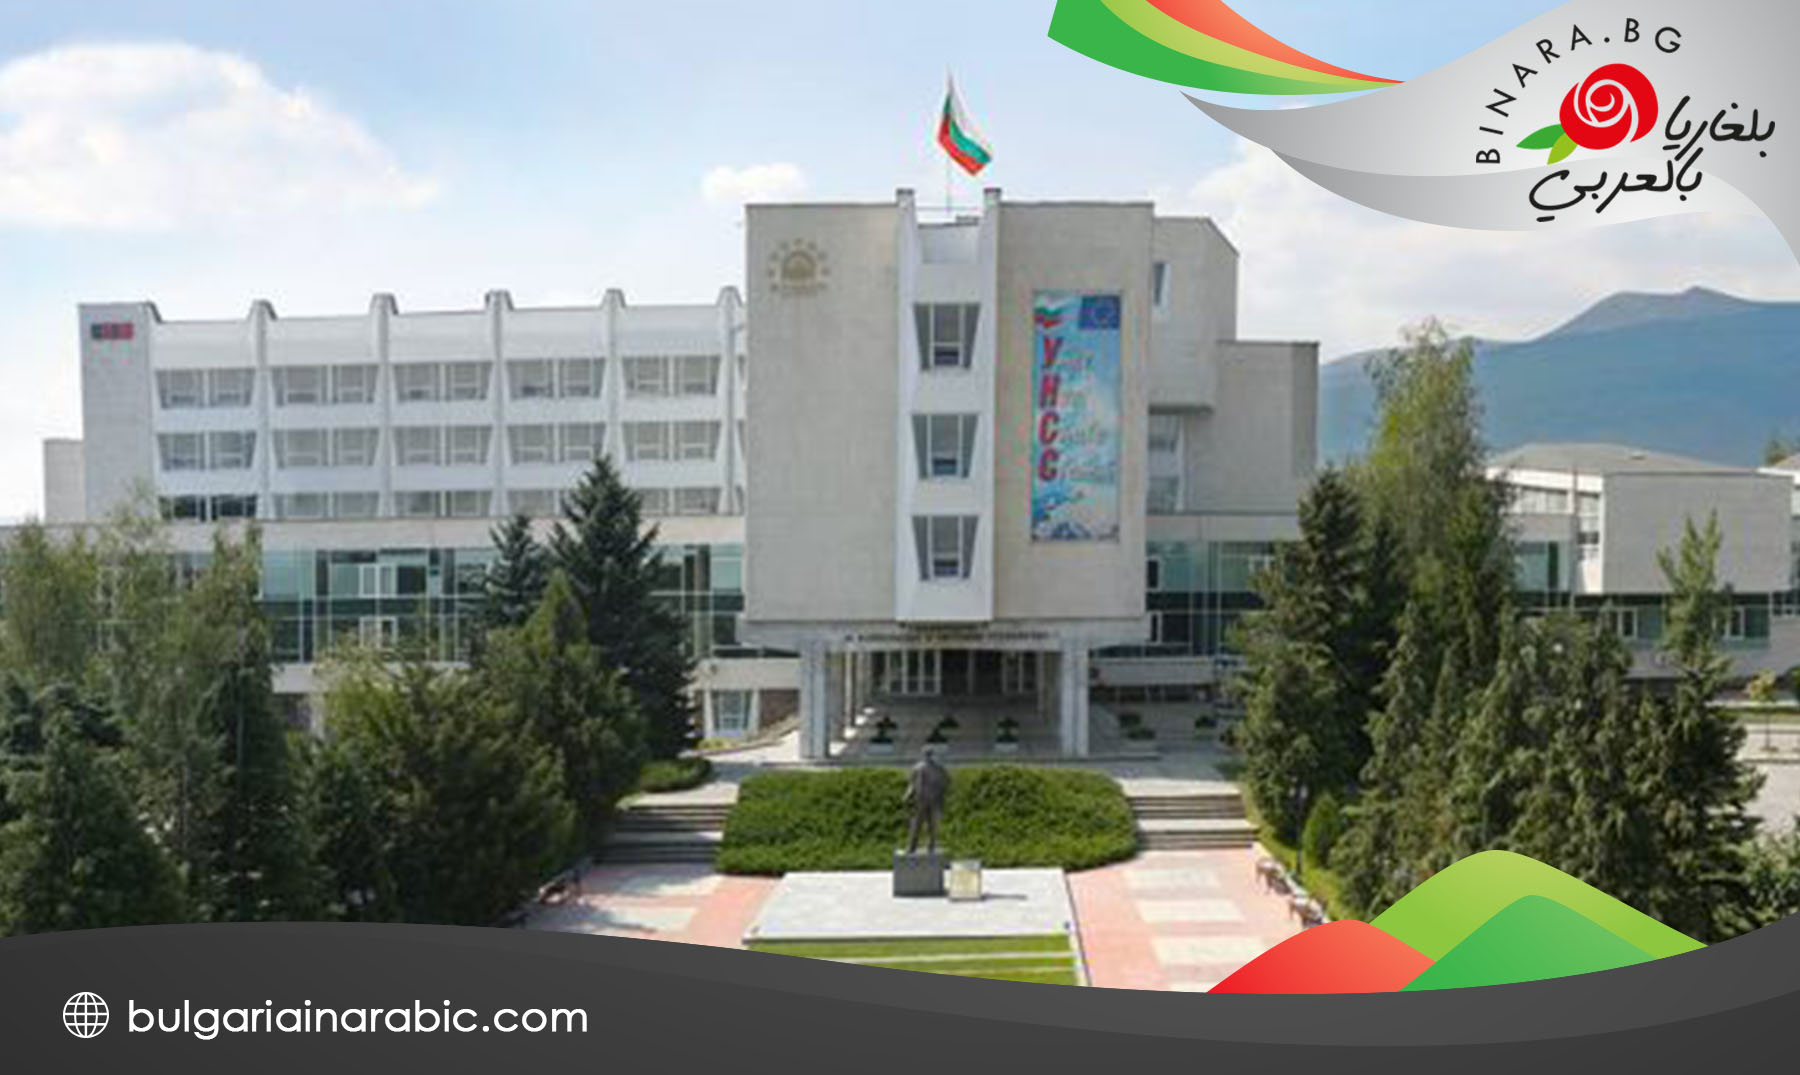 جامعة ادارة الاعمال في بلغاريا